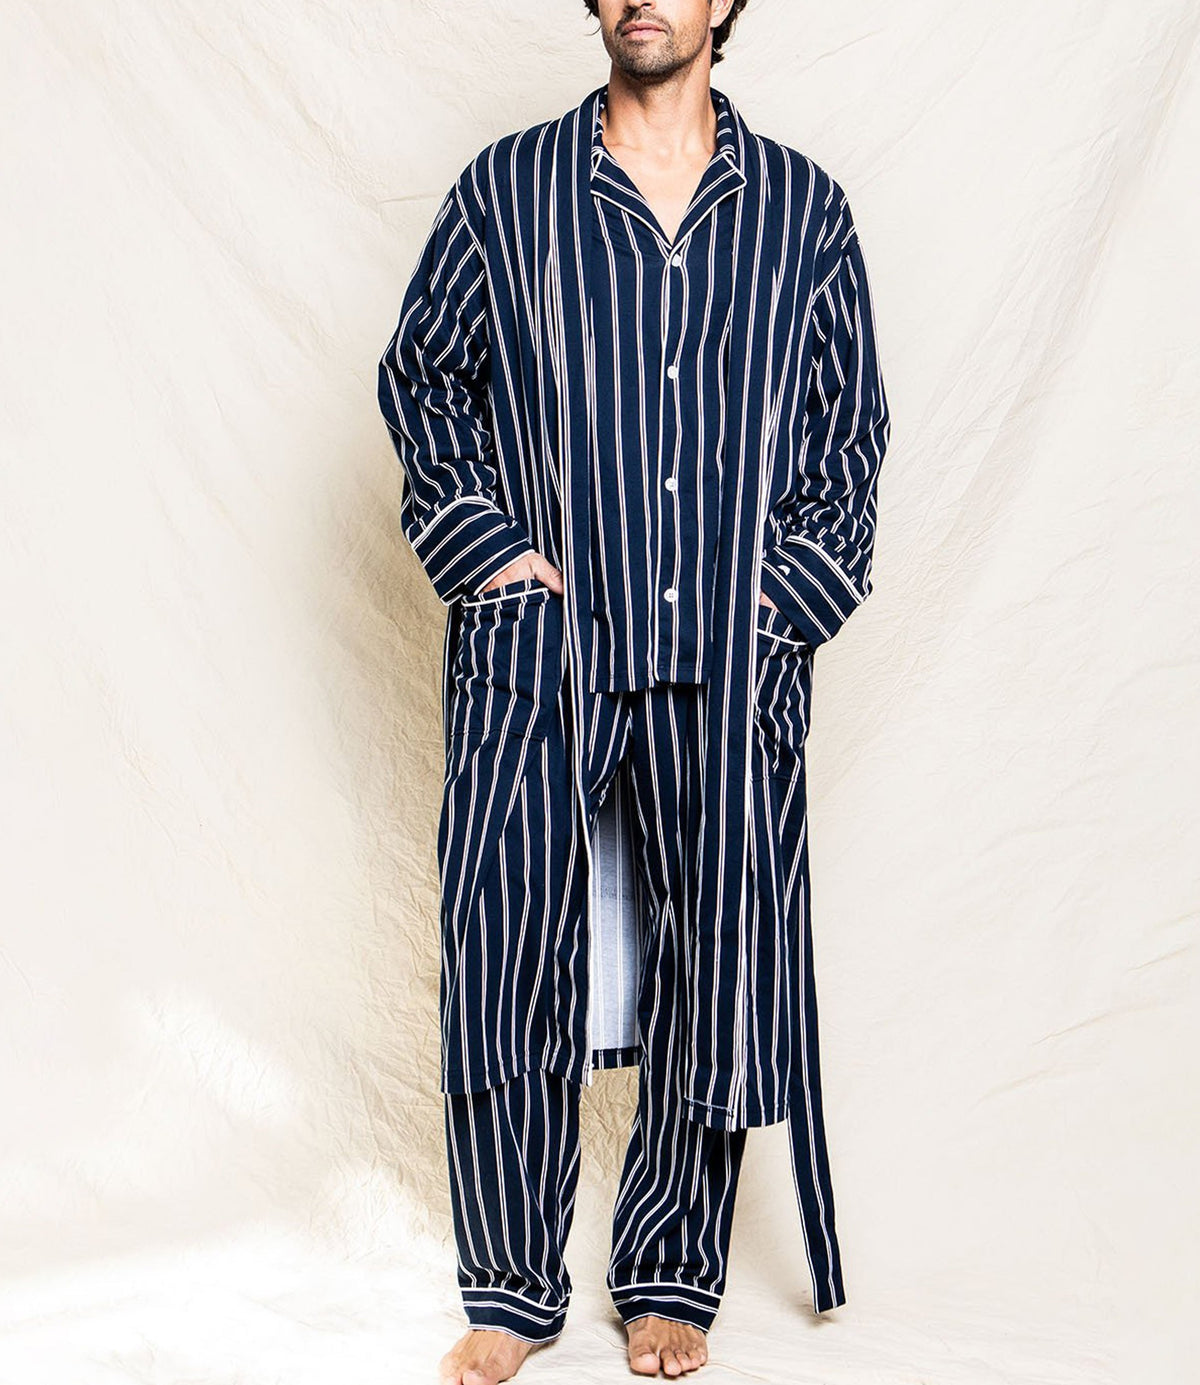 Men's Grant Pinstripe Pima Cotton Robe